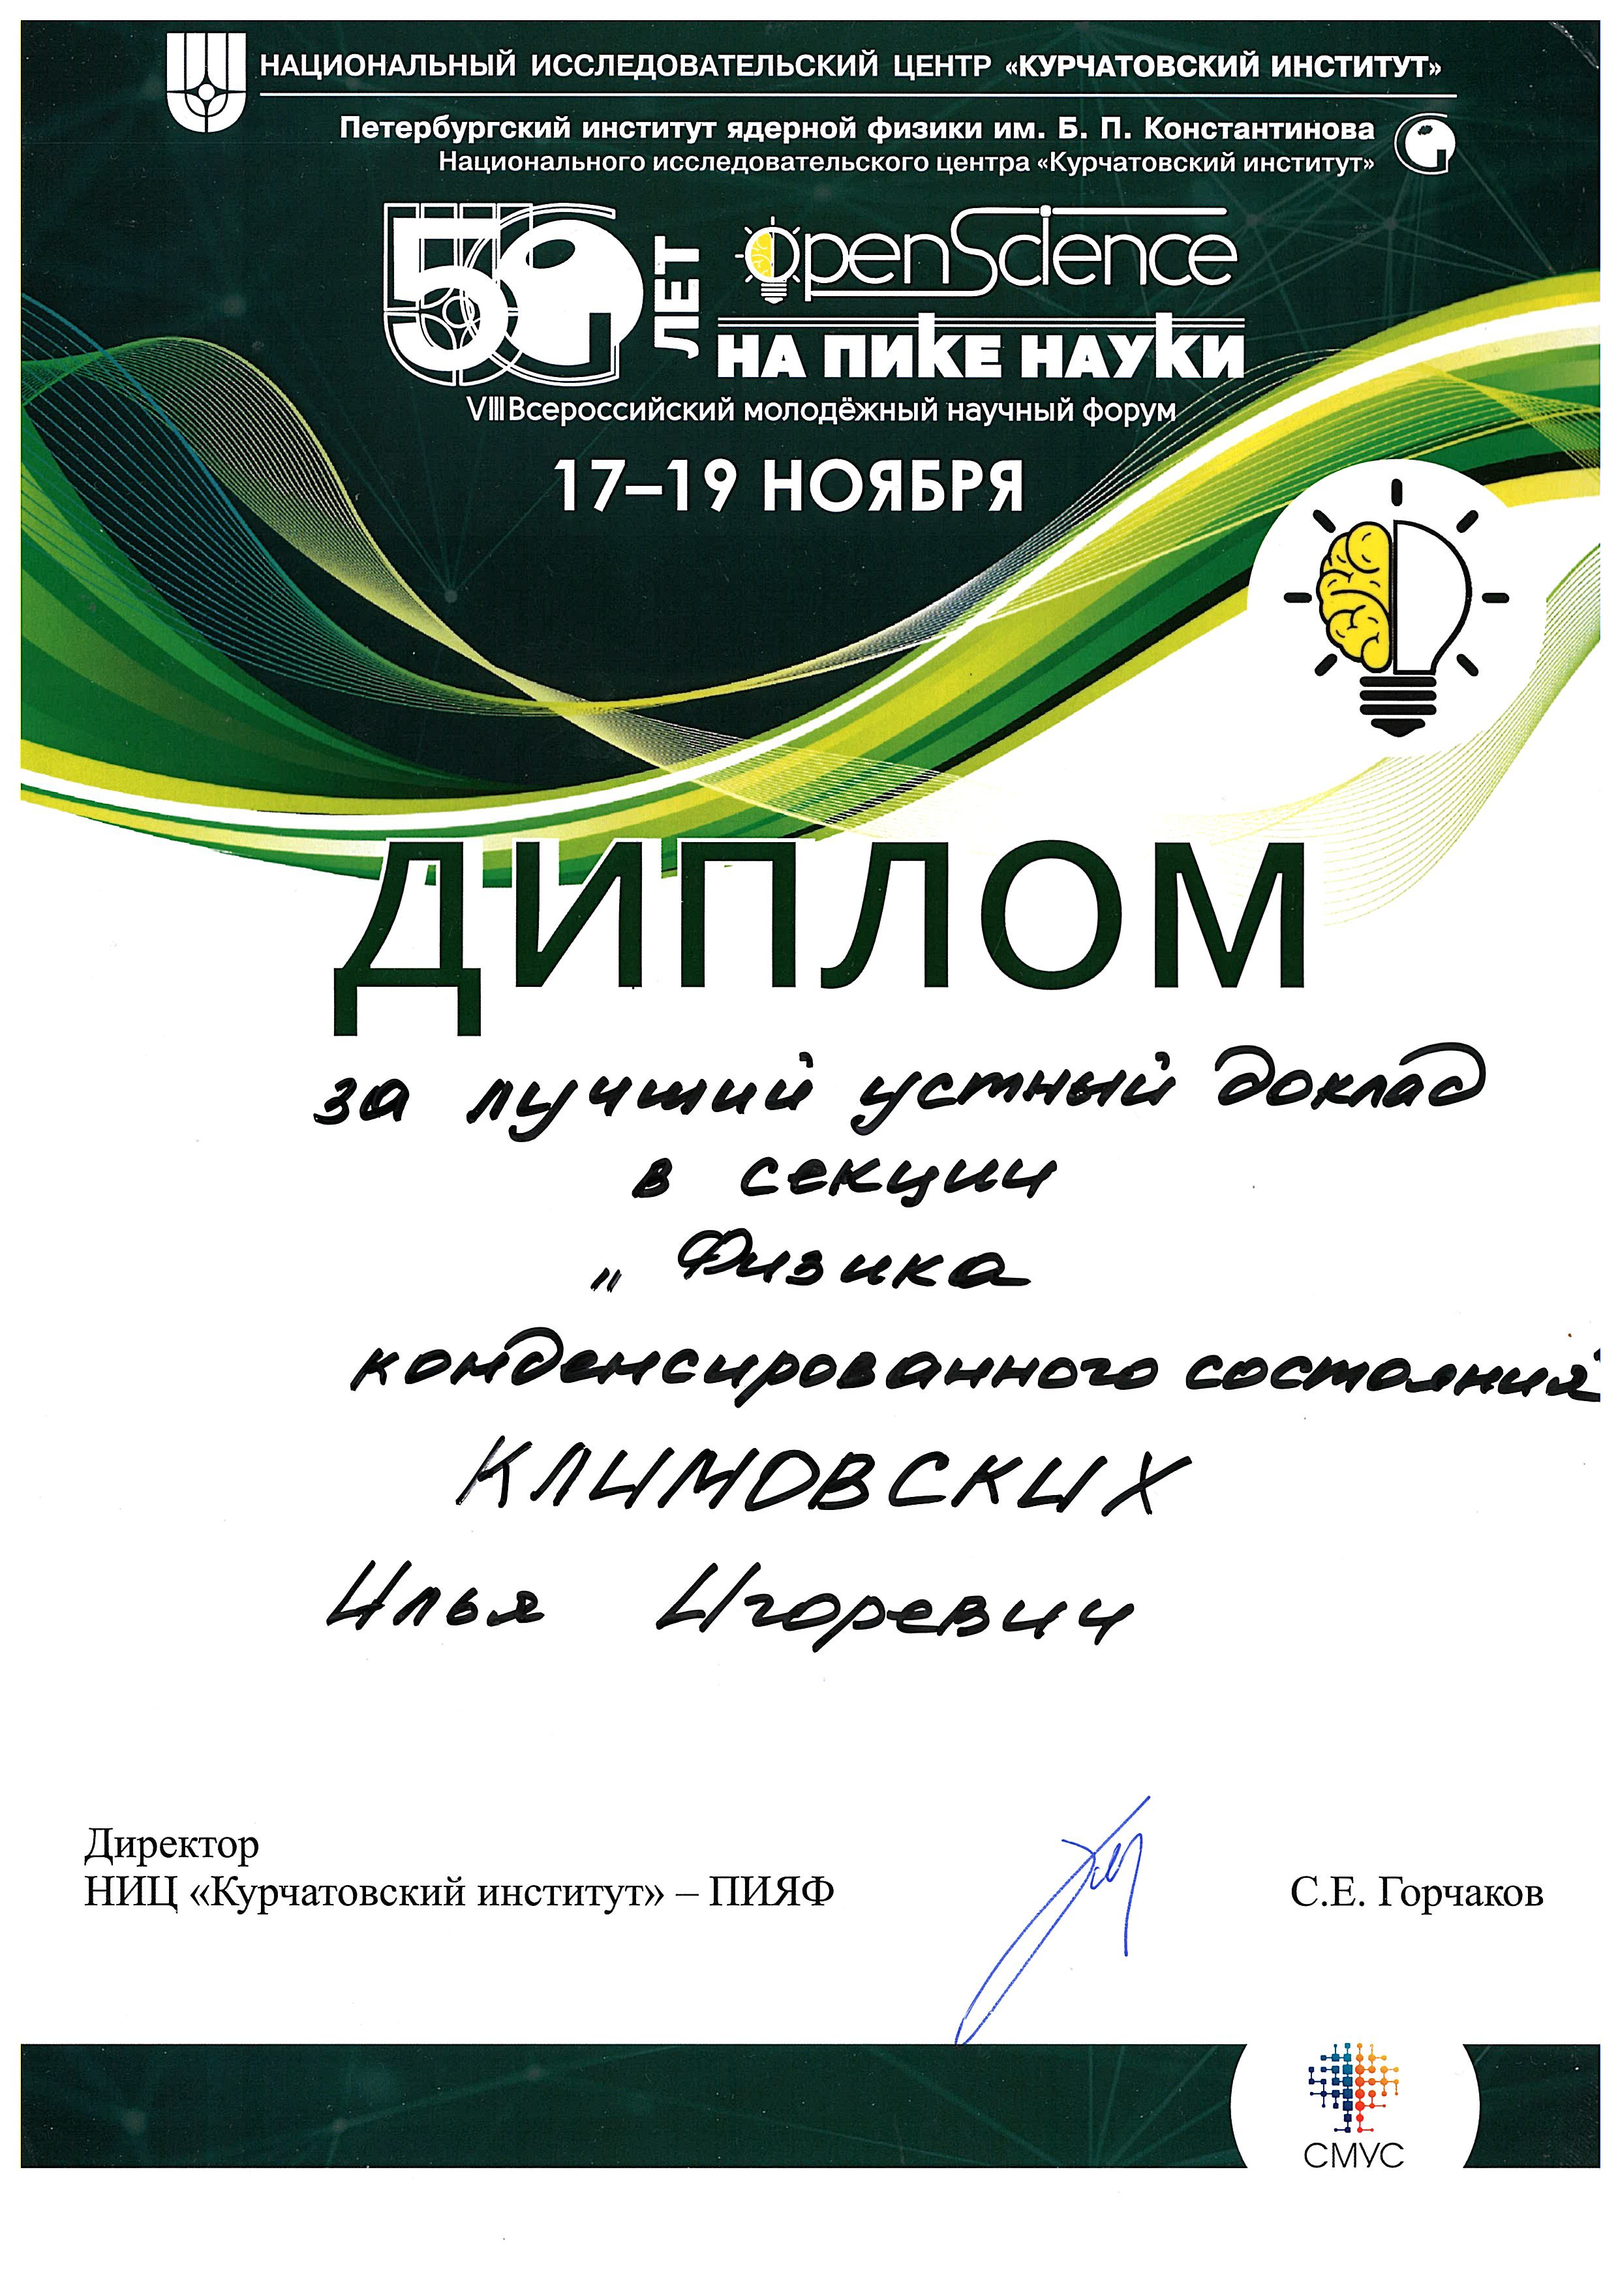 Diplom Klimovskikh